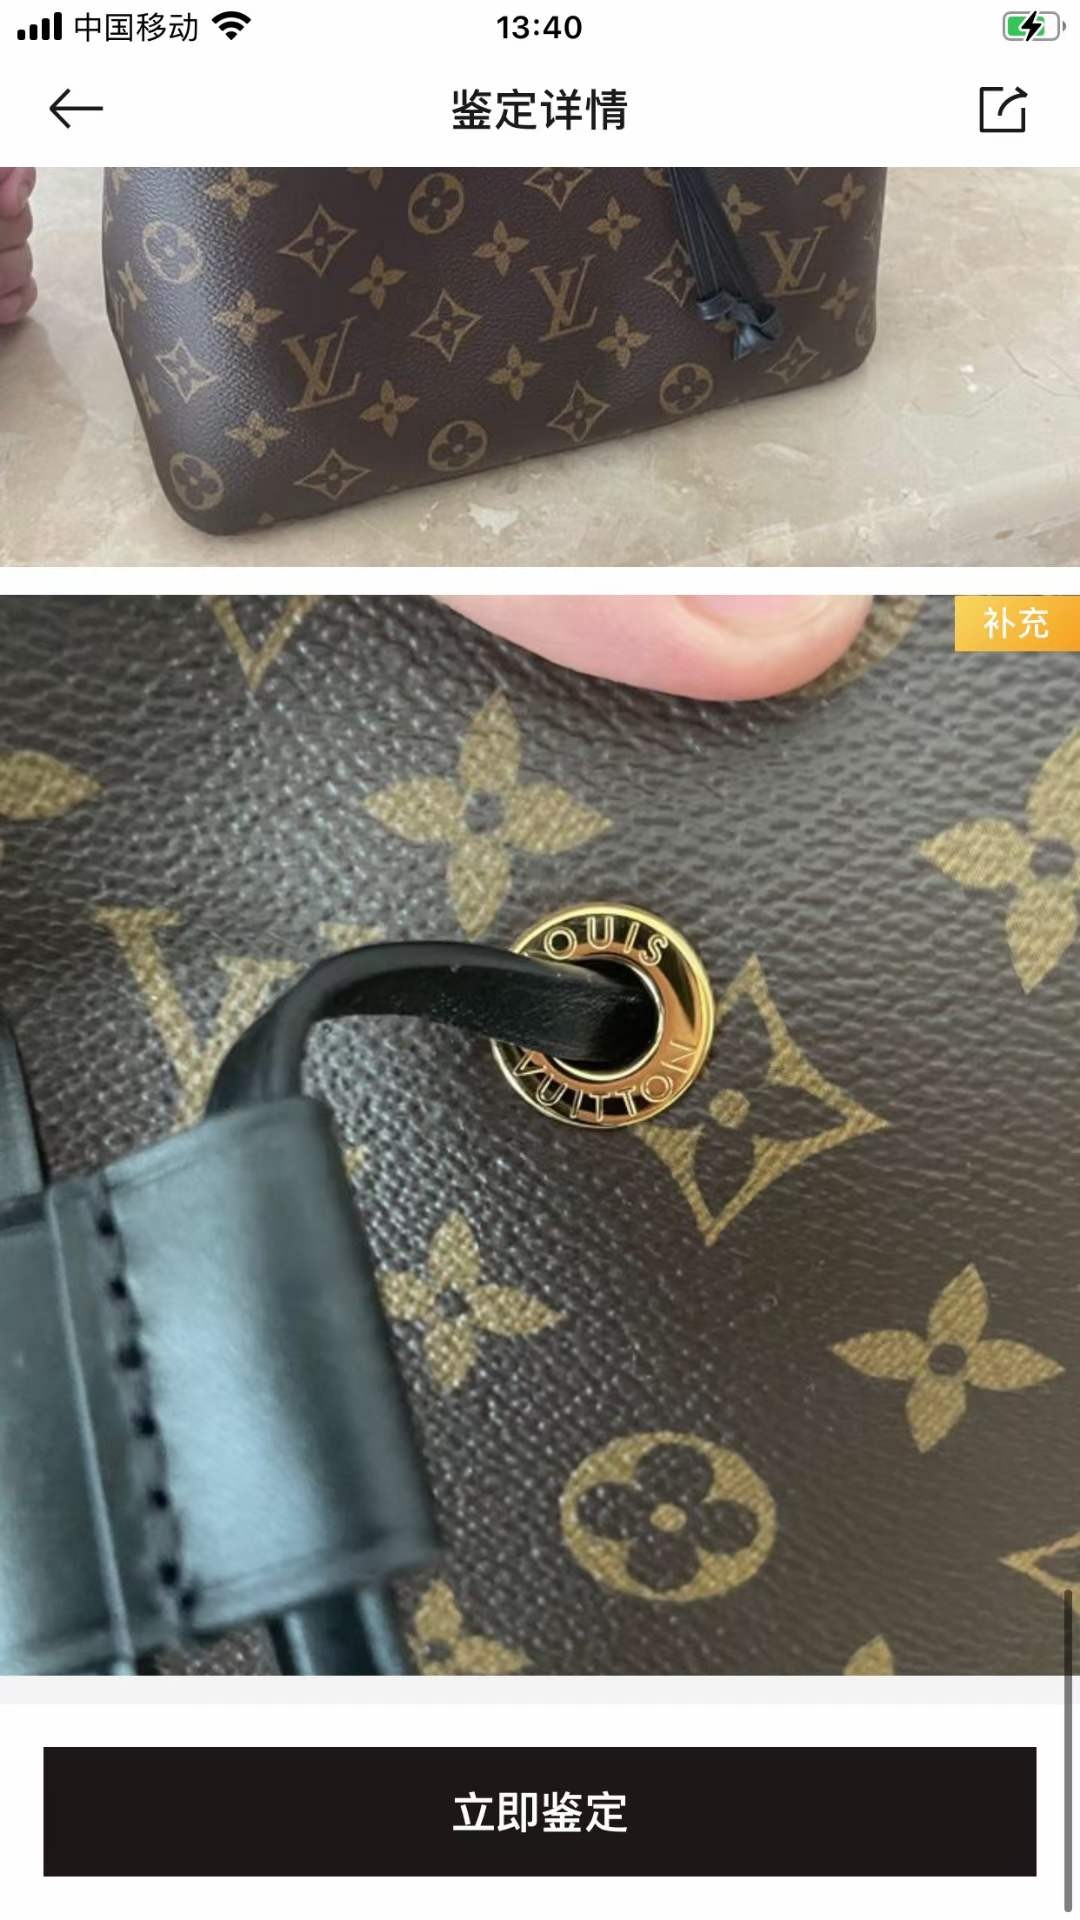 Louis Vuitton M44020 NÉONOÉ Top Replica Handbag Inspection Details (2022 Edition)-Best Quality Fake Louis Vuitton Bag Online Store, Replica designer bag ru